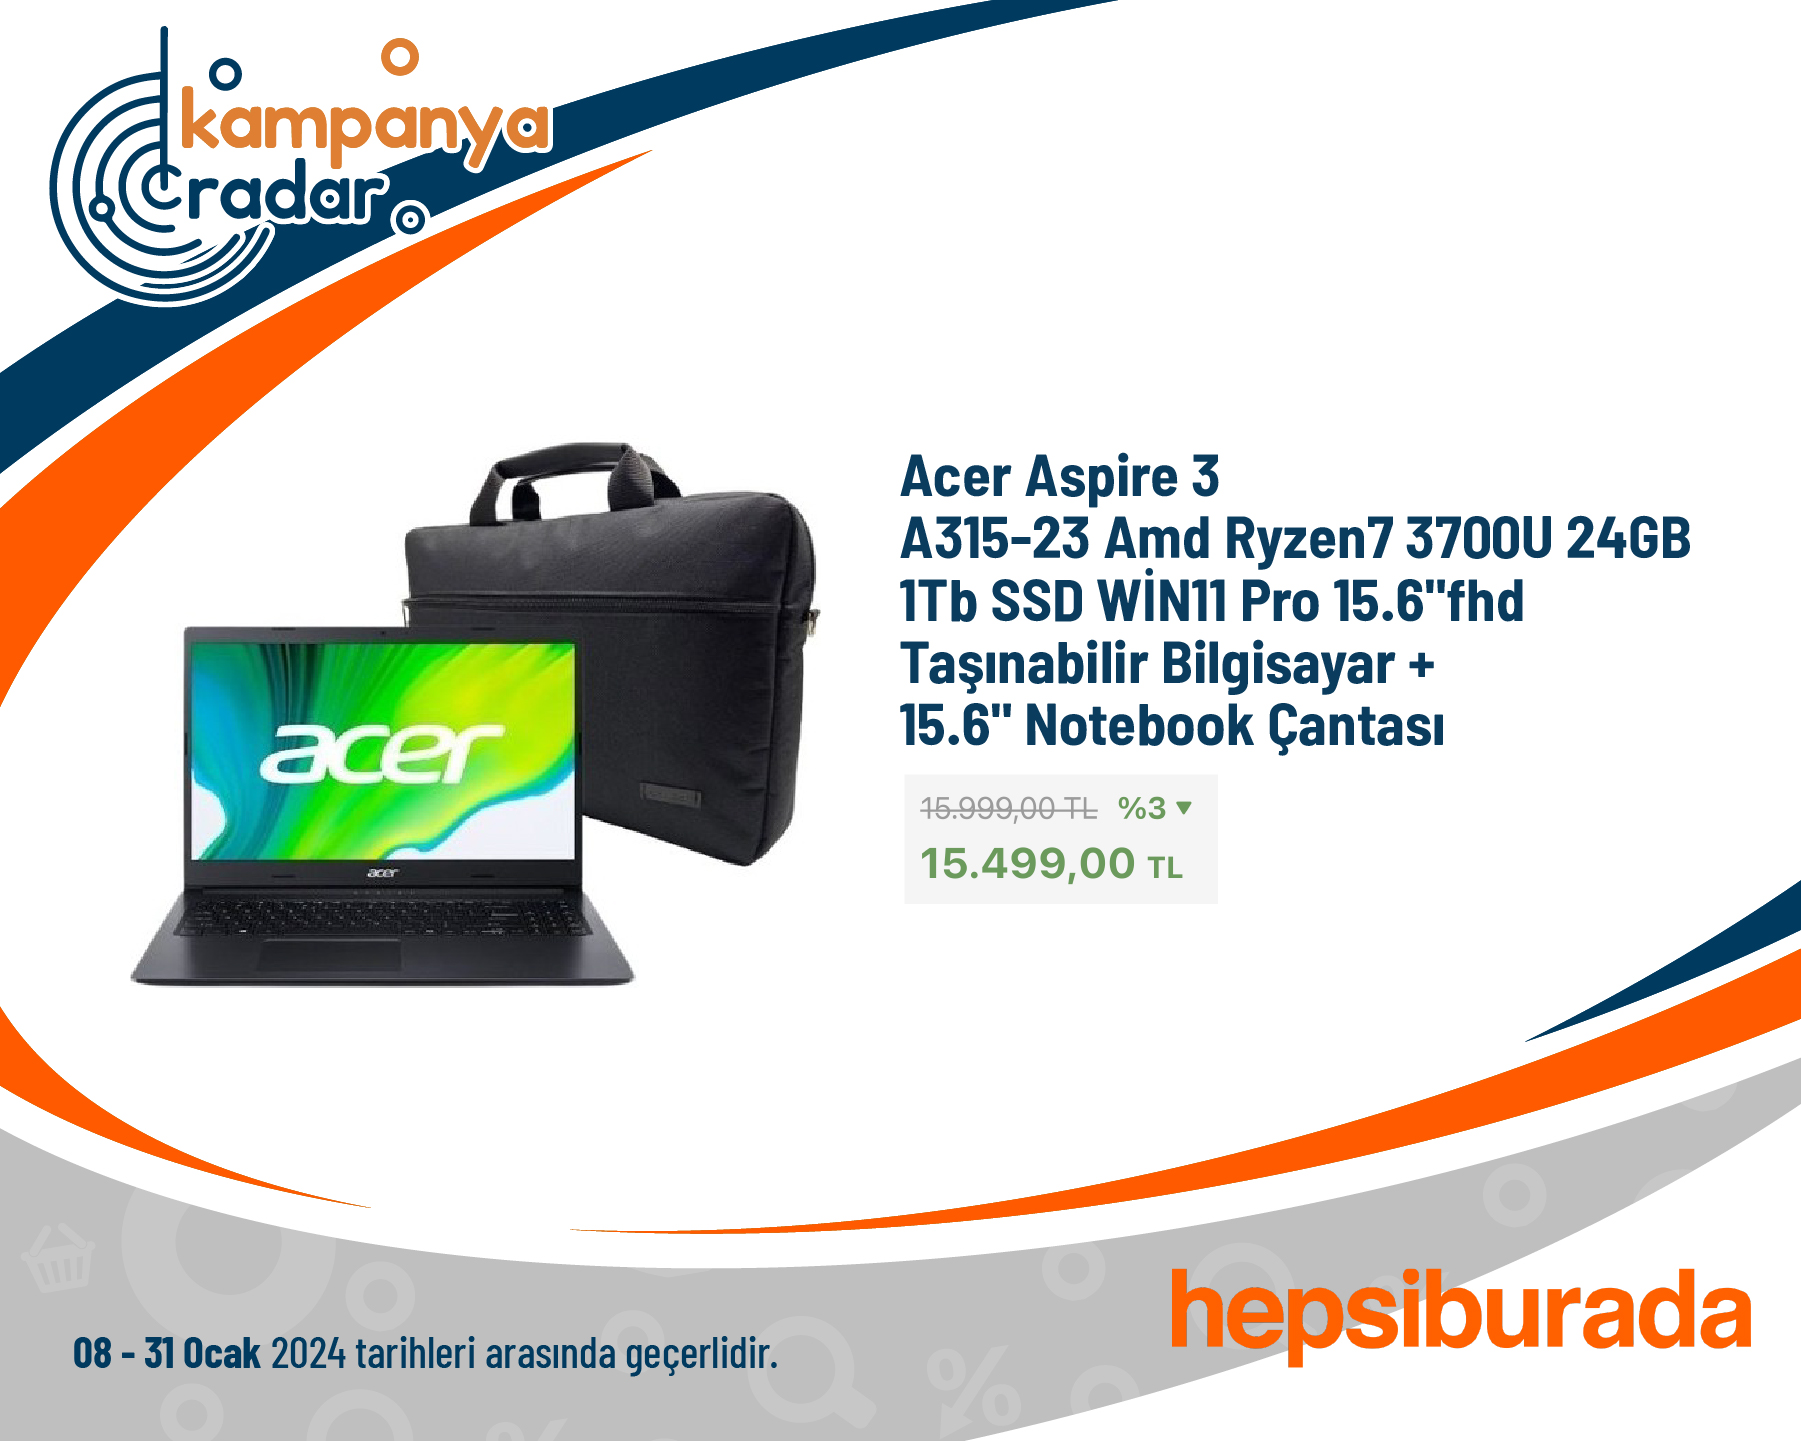 Acer Aspire 3 A315-23 Amd Ryzen7 3700U 24GB 1tb Sdd aşınabilir Bilgisayar + 15.6 Notebook Çantası